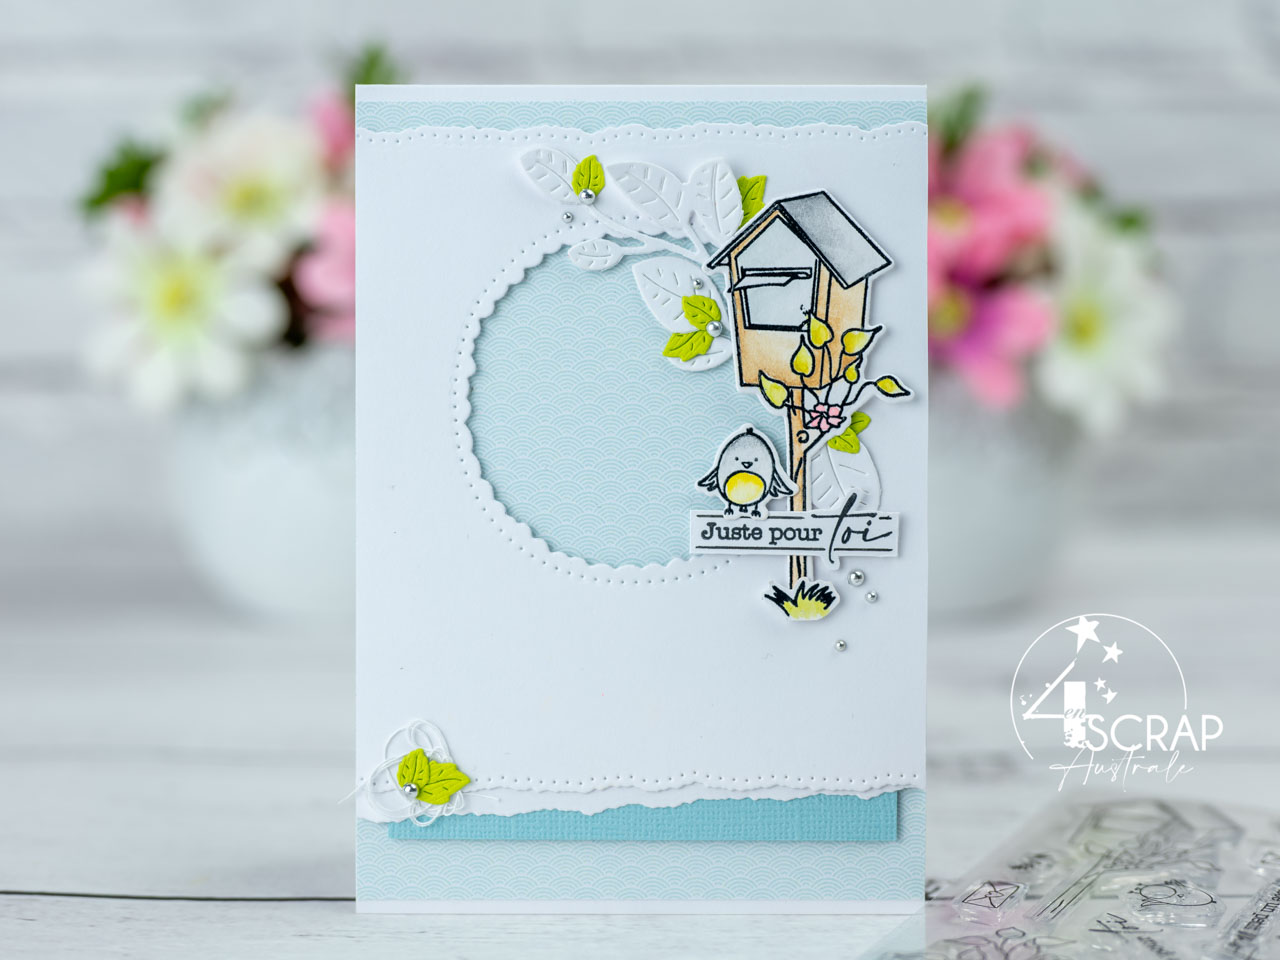 Création d'une série de cartes de printemps avec boites aux lettres, feuillages et petits oiseaux de 4enscrap.